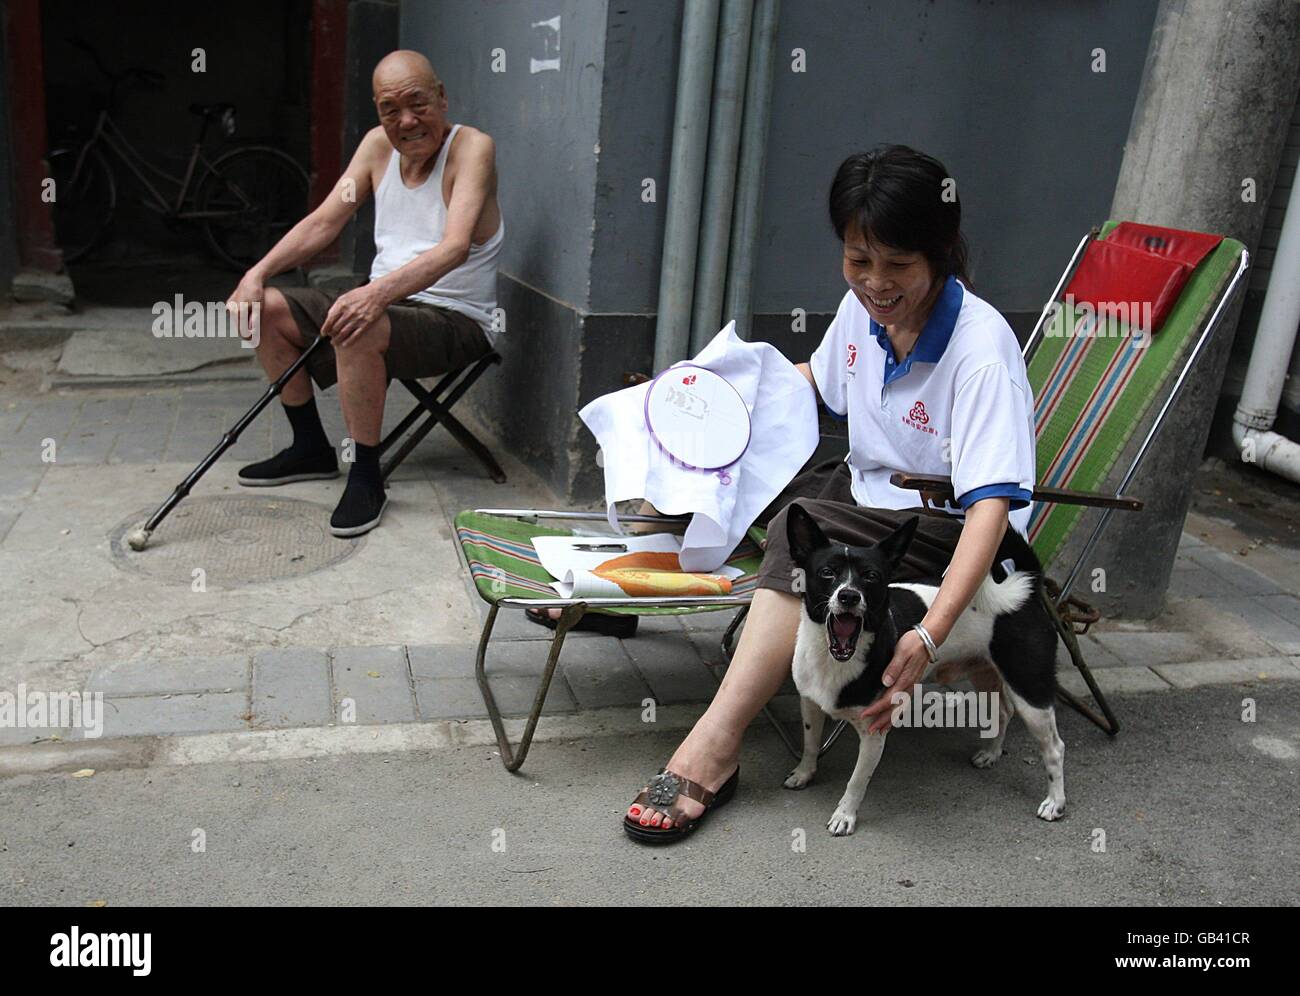 Olympische Spiele - Olympische Spiele In Peking 2008. Ein Hund bellt in Peking, China, gegen die Kamera. Stockfoto